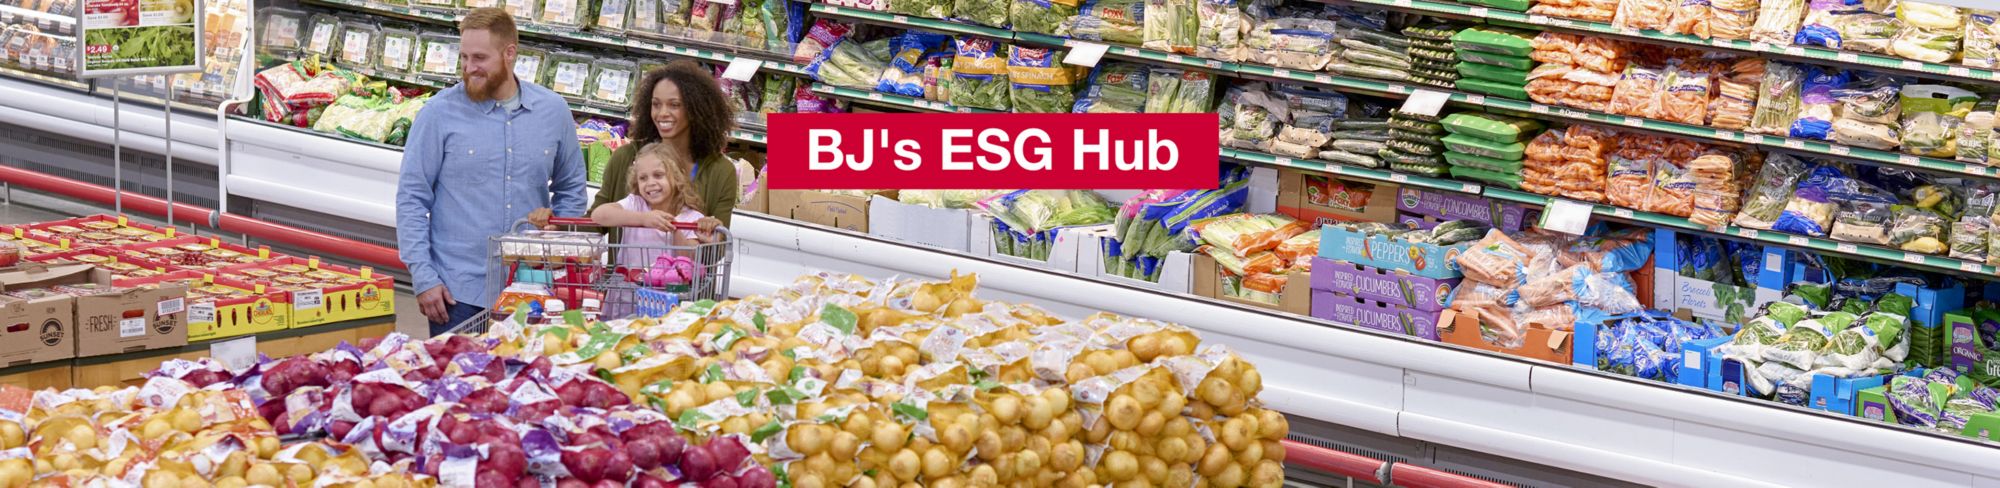 BJ's ESG Hub